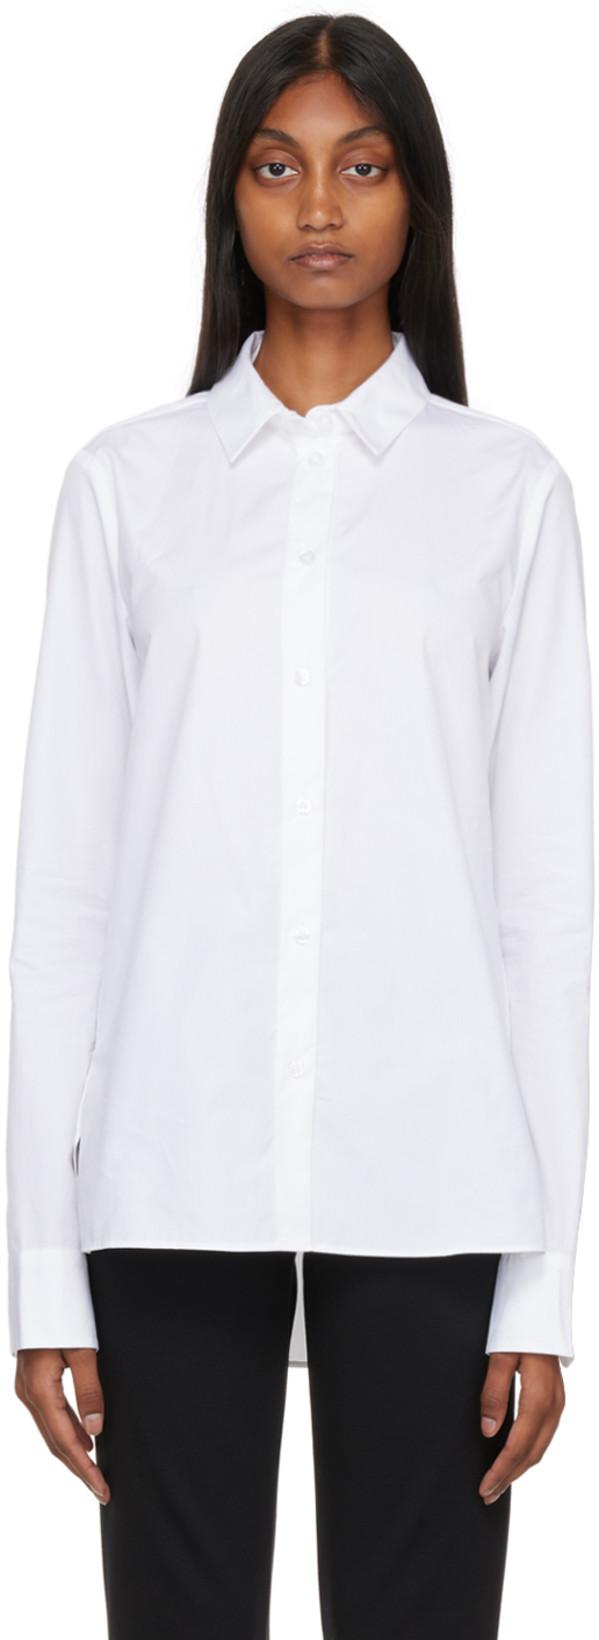 White Crisp Shirt by BITE